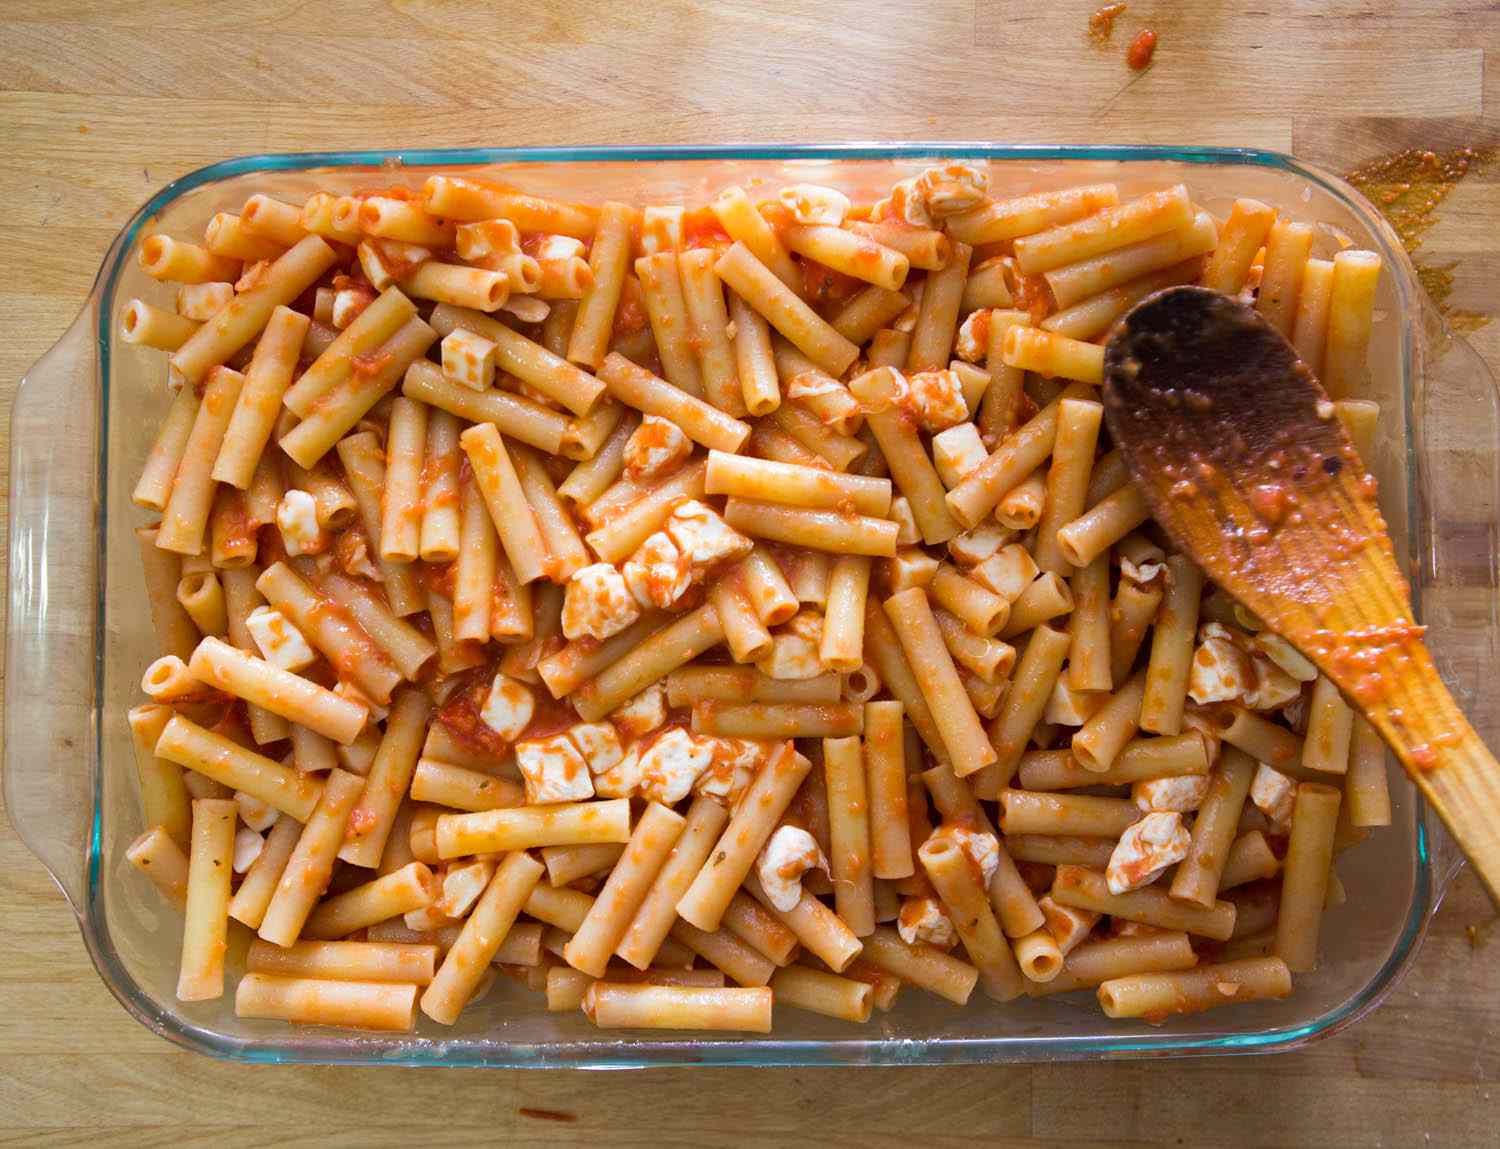 意大利面涂上酱汁，放在烤盘中，撒上马苏里拉奶酪块。